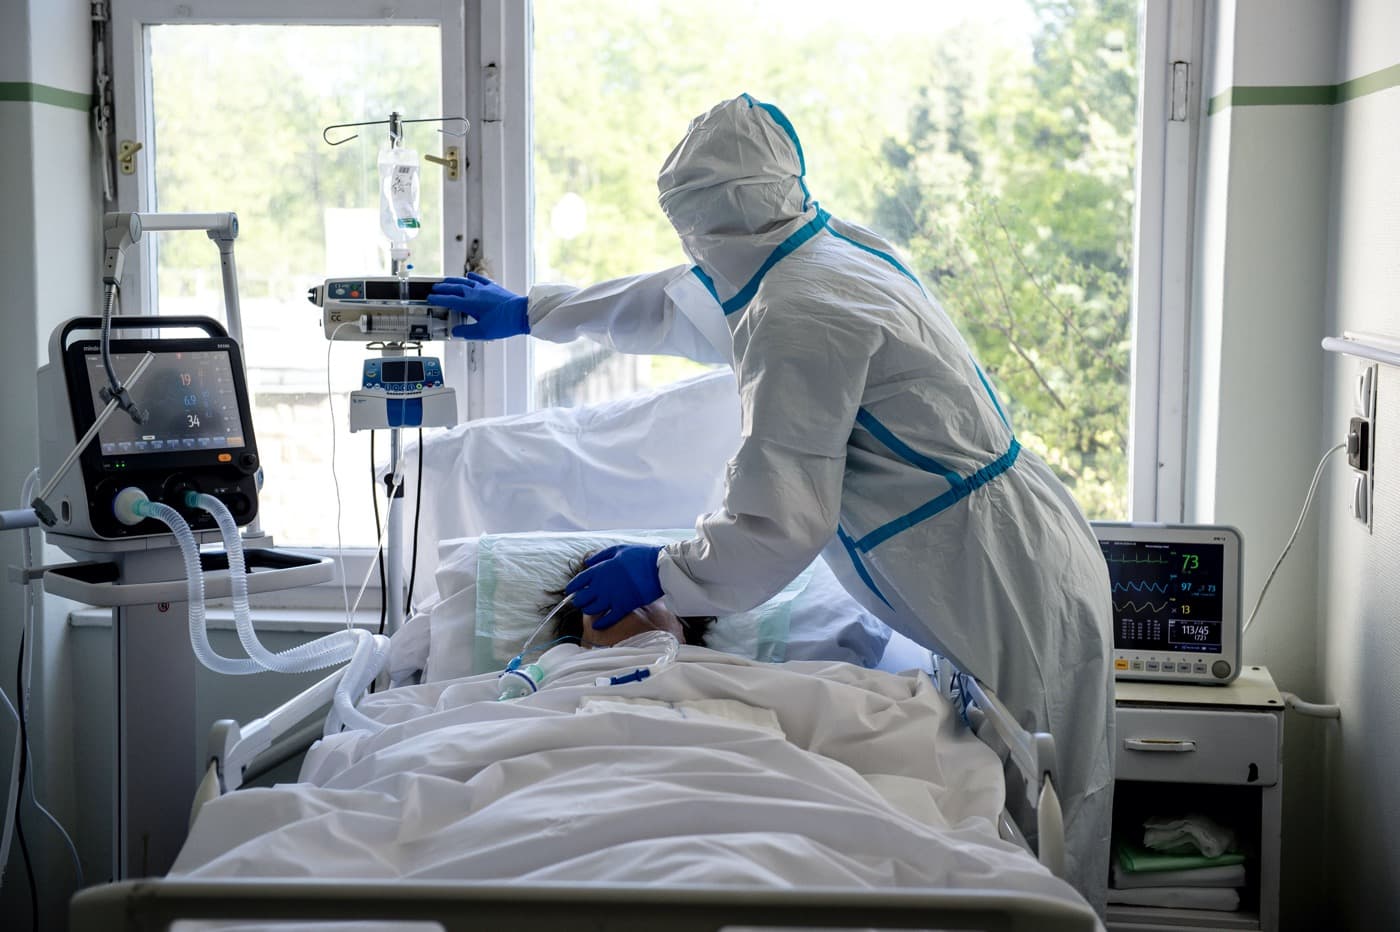 Koronavírus: Meghalt 207 ember, 2527 új fertőzöttet azonosítottak Magyarországon